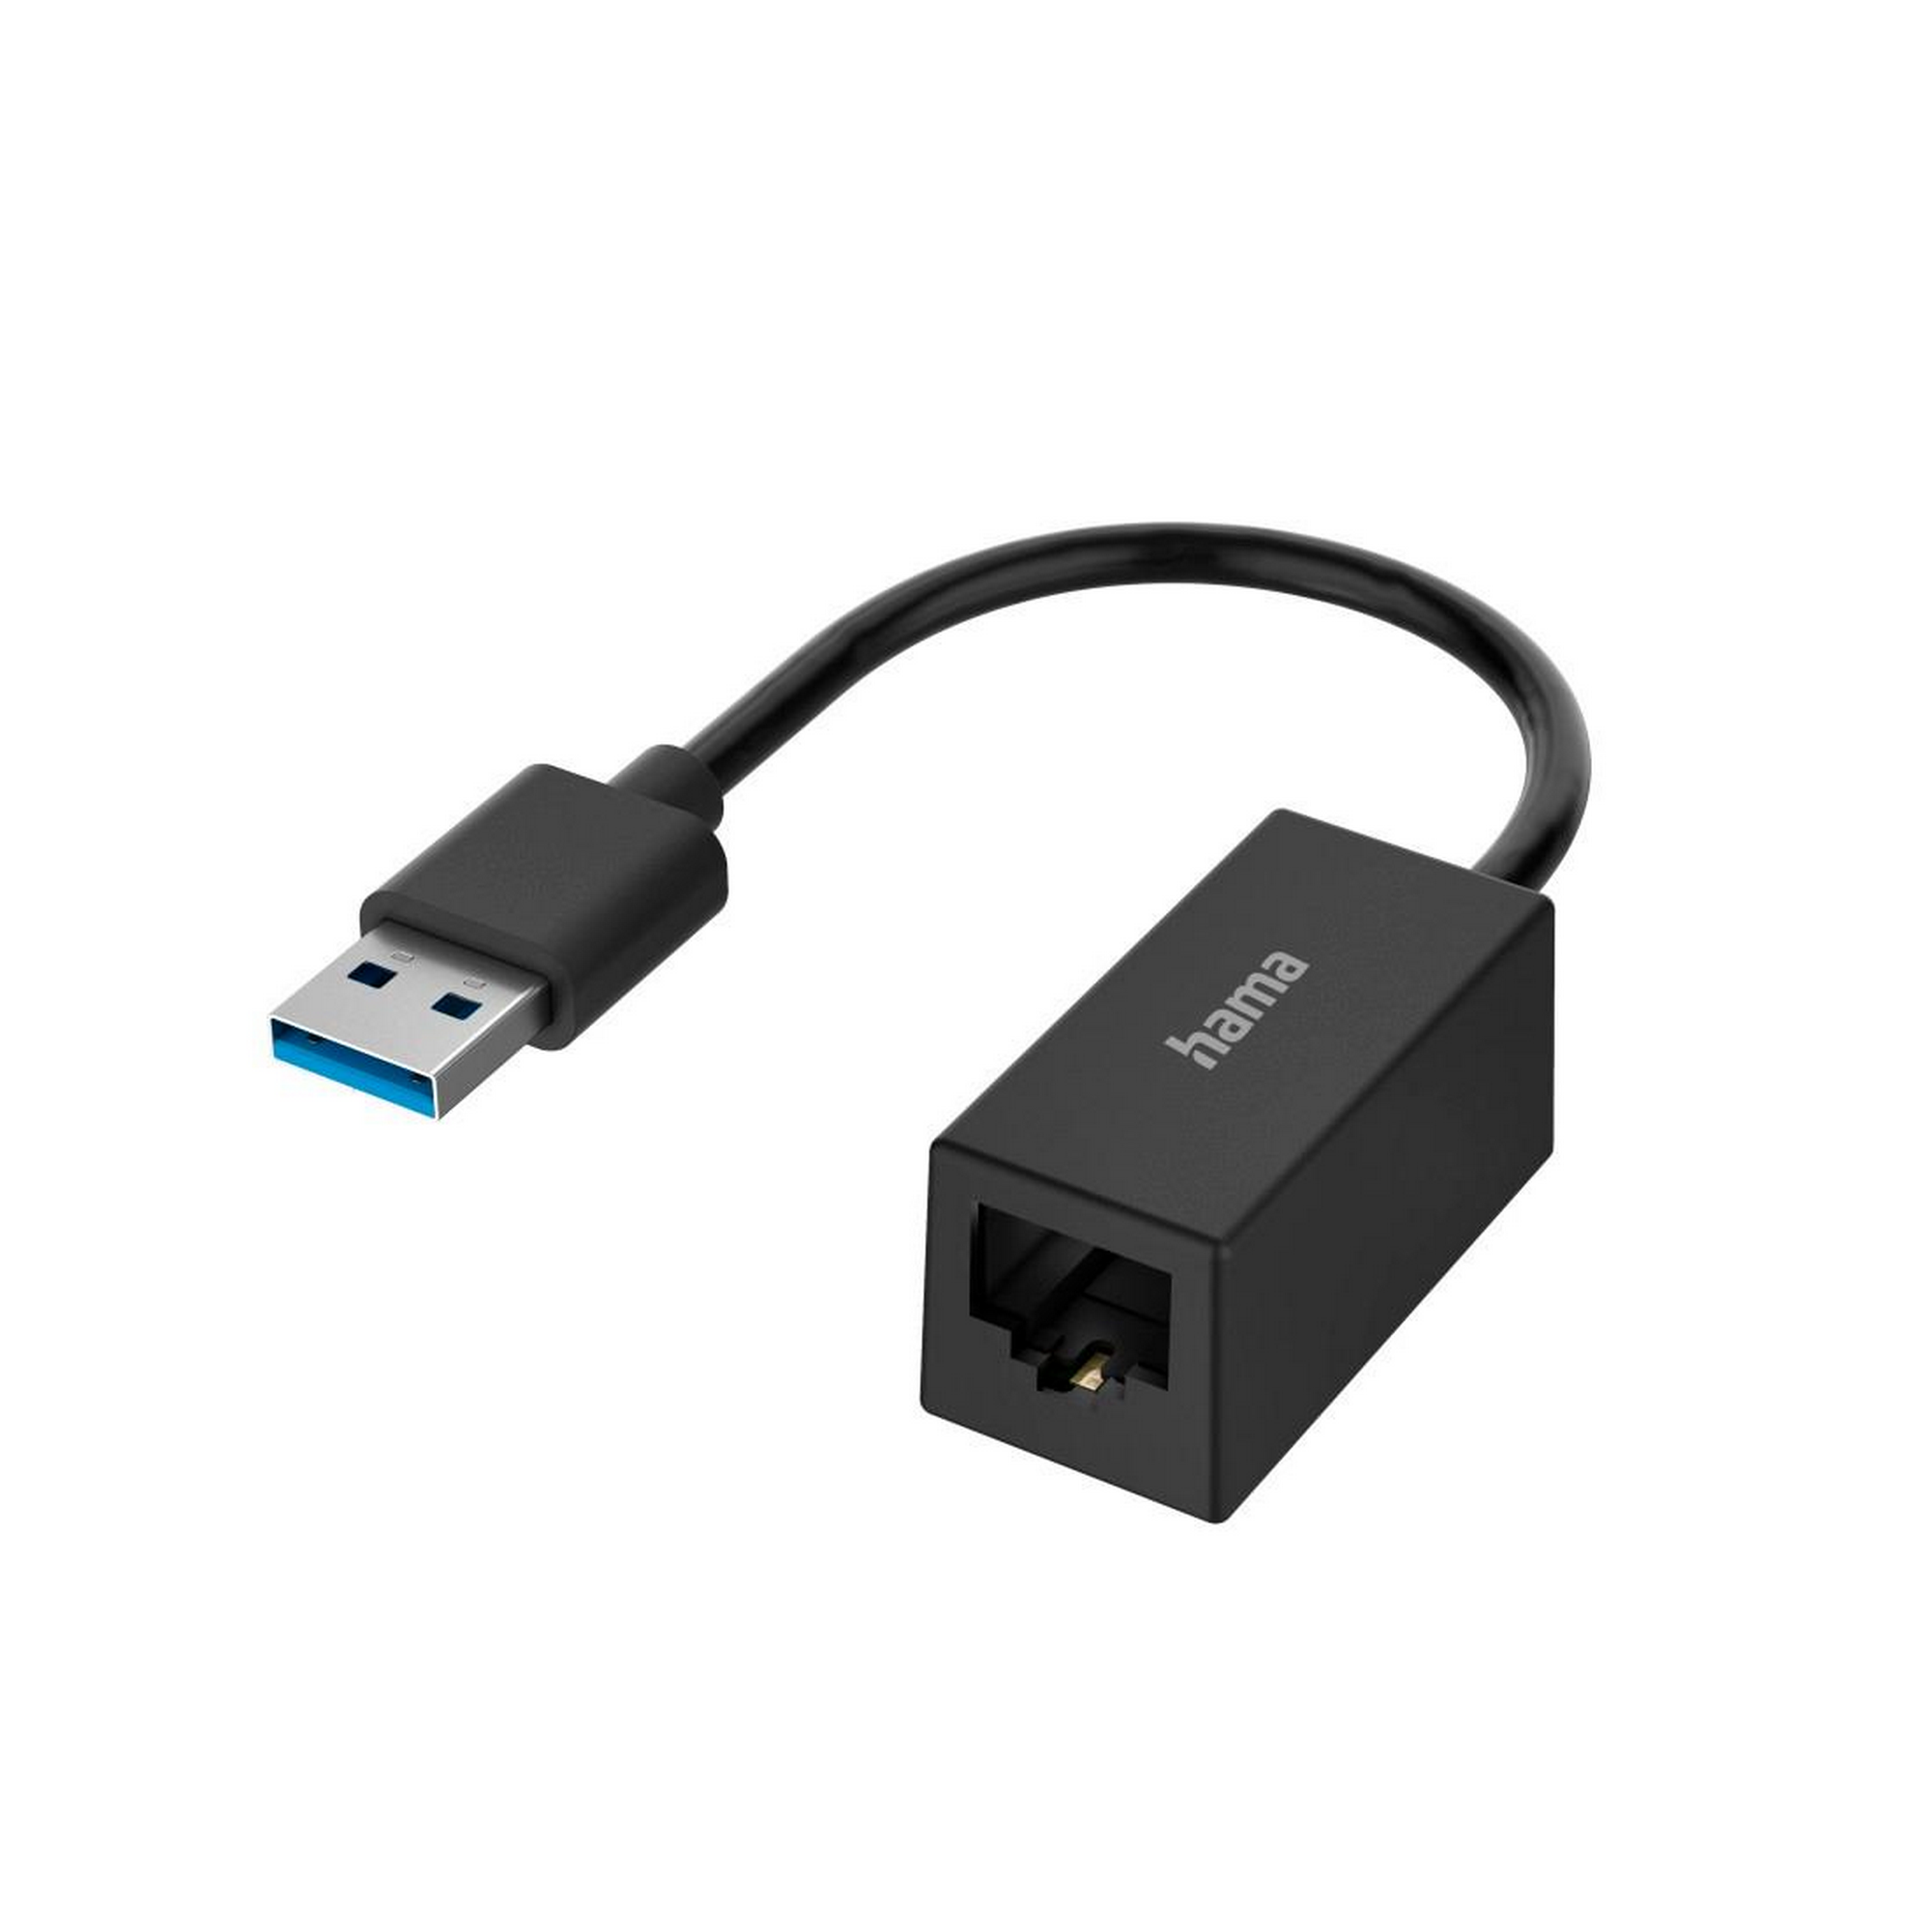 Netzwerkadapter USB-Stecker mit LAN-Ethernet-Buchse + product picture